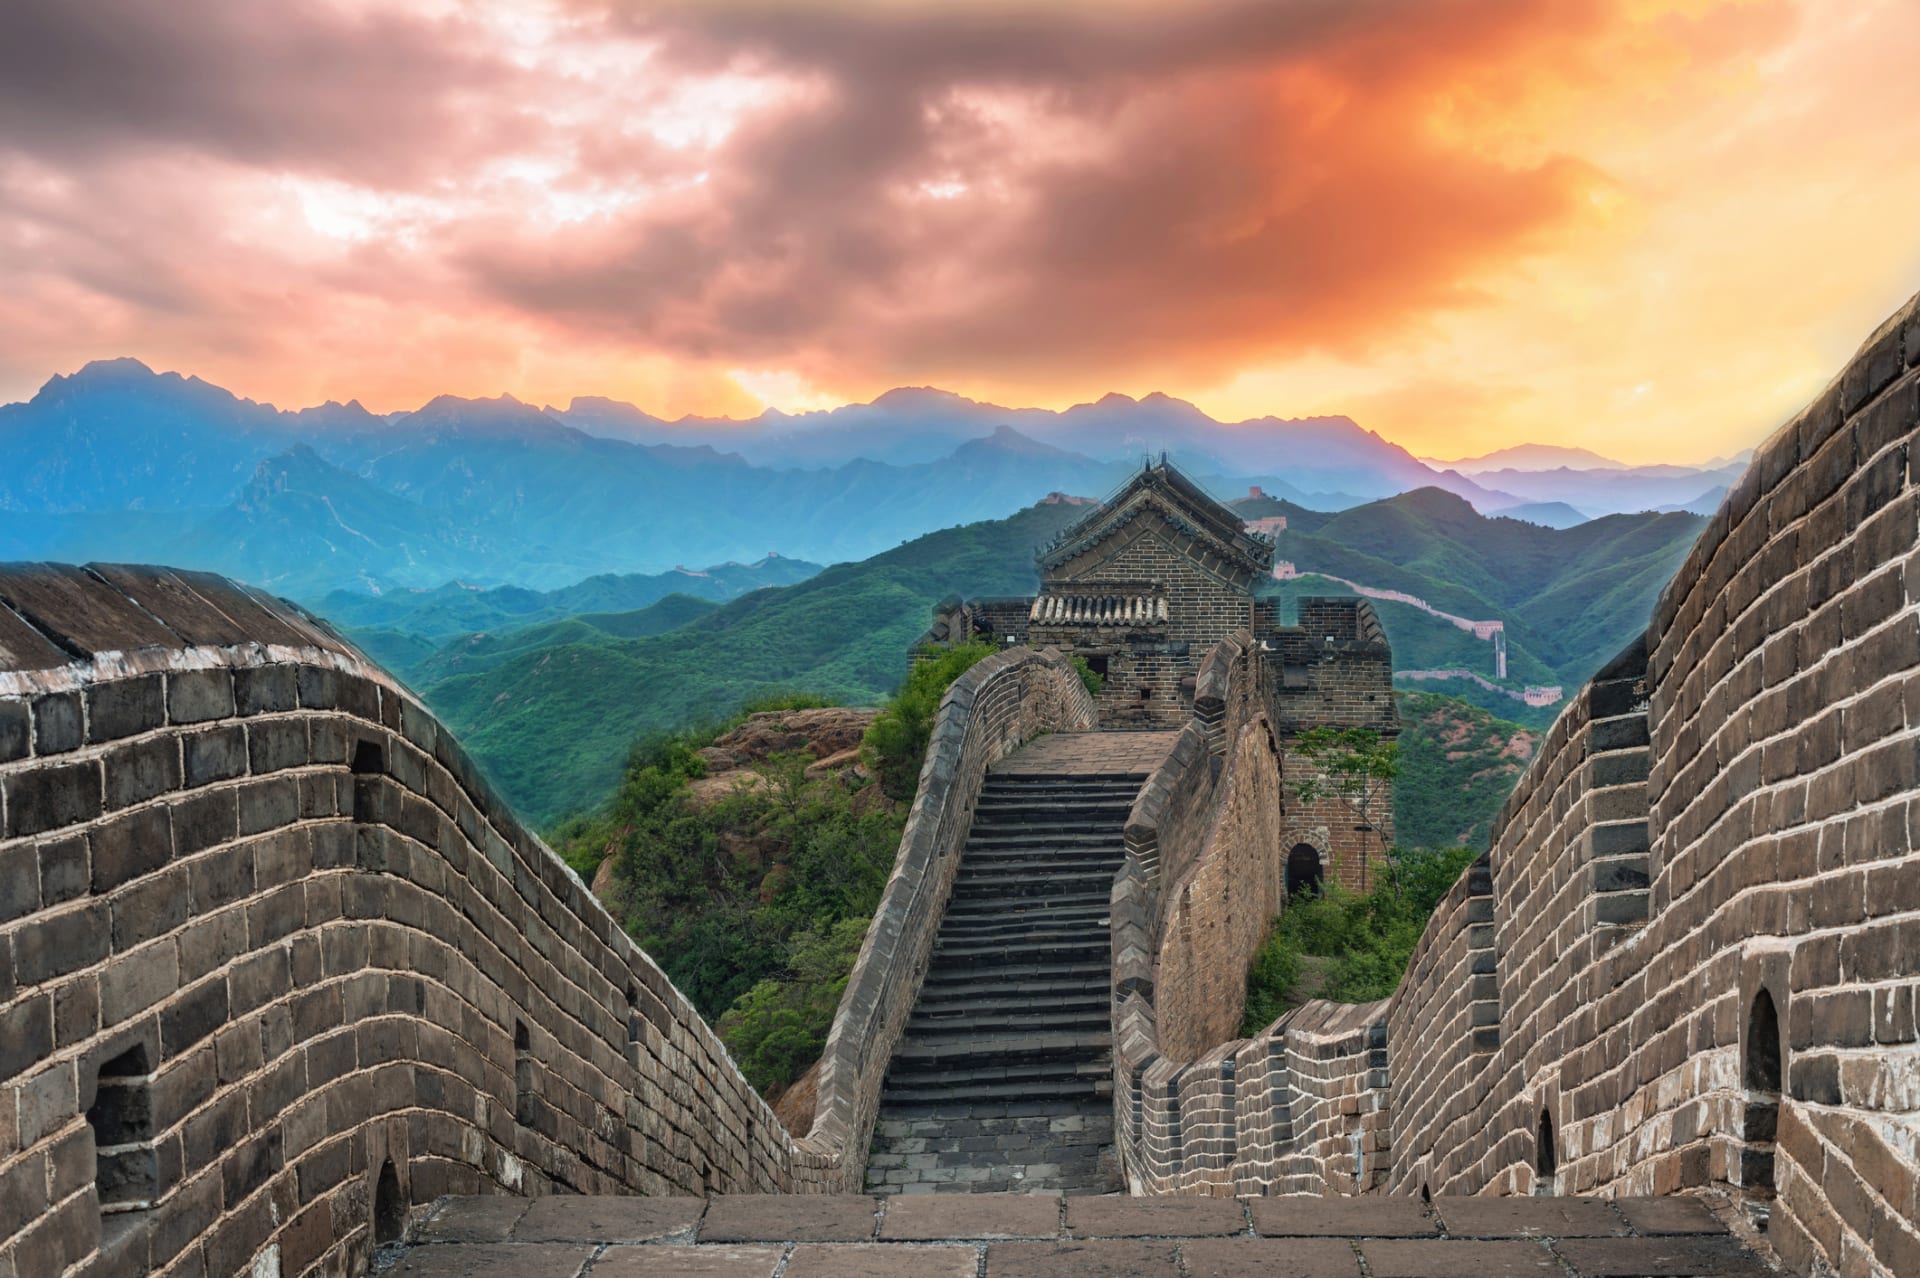 Dnešní podoba zdi byla vybudována za dynastie Ming v době od konce 15. do začátku 17. století. Jejím účelem bylo chránit Čínu před mongolskými nájezdy